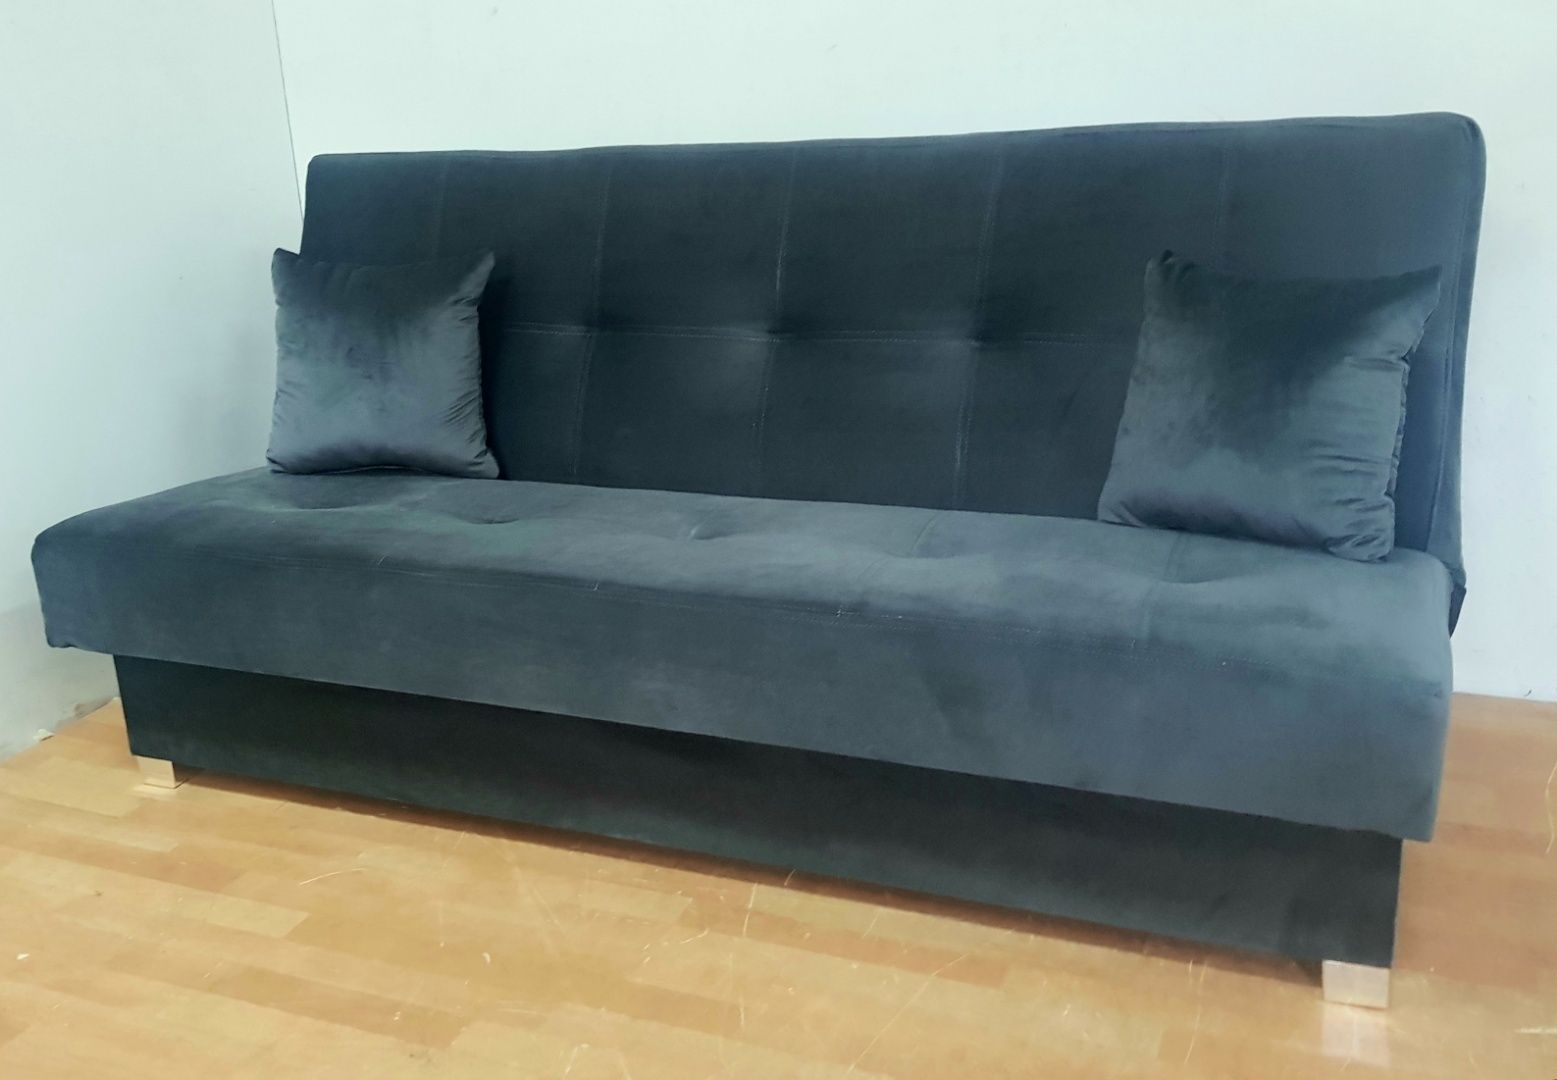 Nowa sofa Kolory kanapa wersalka tapczan łóżko  rozkładana do spania